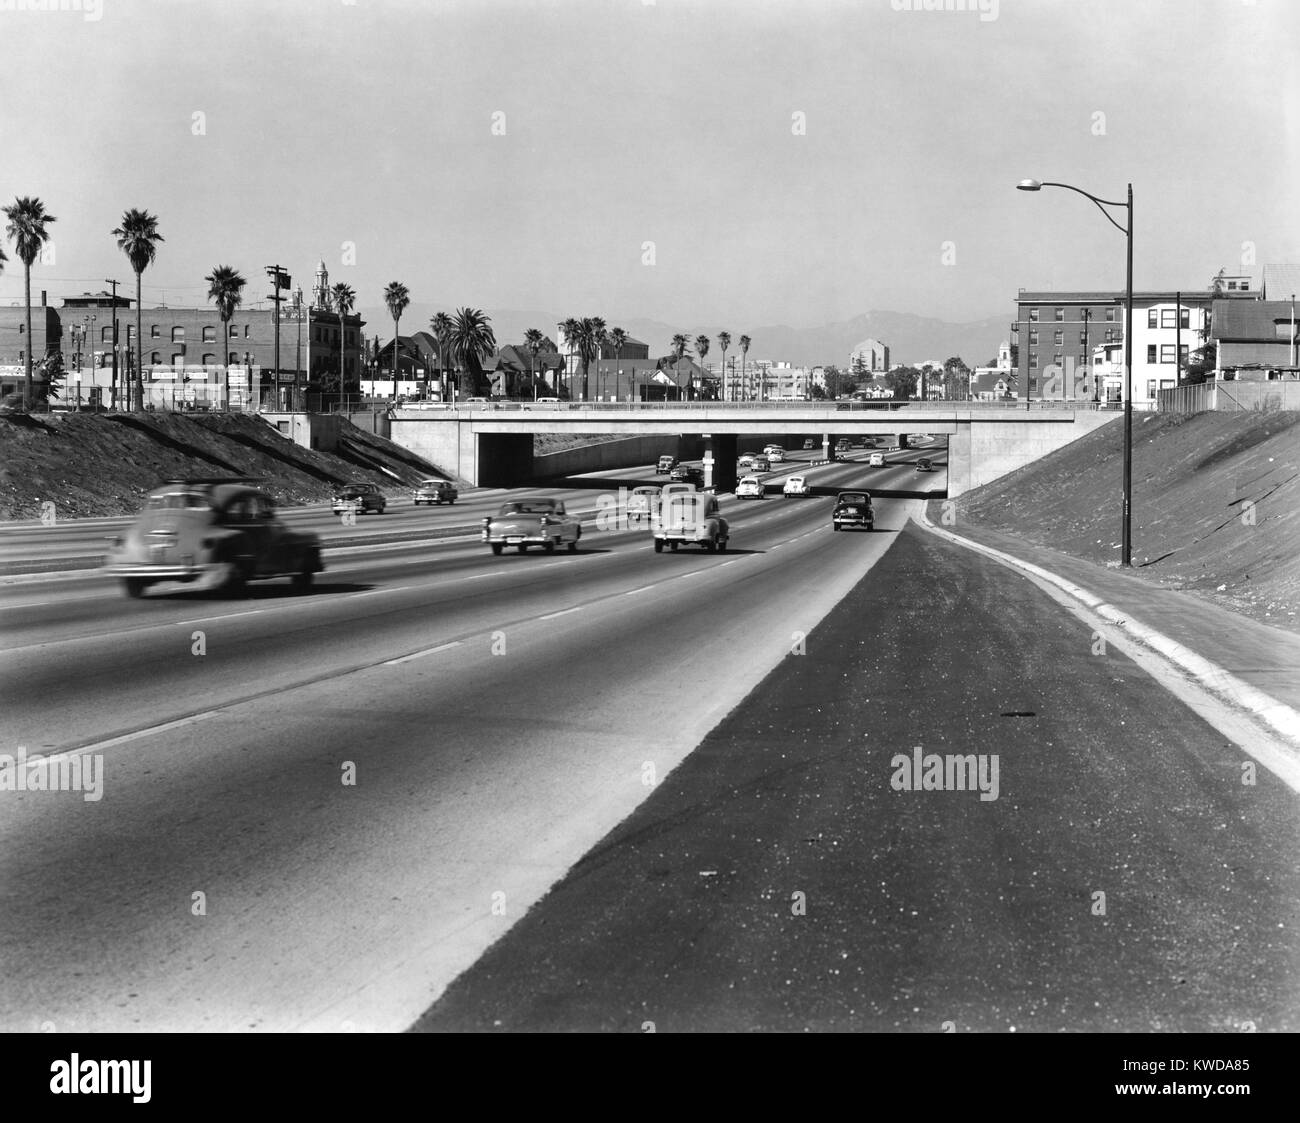 Staufreie 8 spurigen Autobahn in Südkalifornien, Sept. 1956. Los Angeles soll umfassenden Freeway Plan für Los Angeles 1947, mit San Diego bald folgenden. Der Bau begann in den frühen 1950er Jahren, die reichlich Platz für Motor v (BSLOC 2016 7 39) Stockfoto